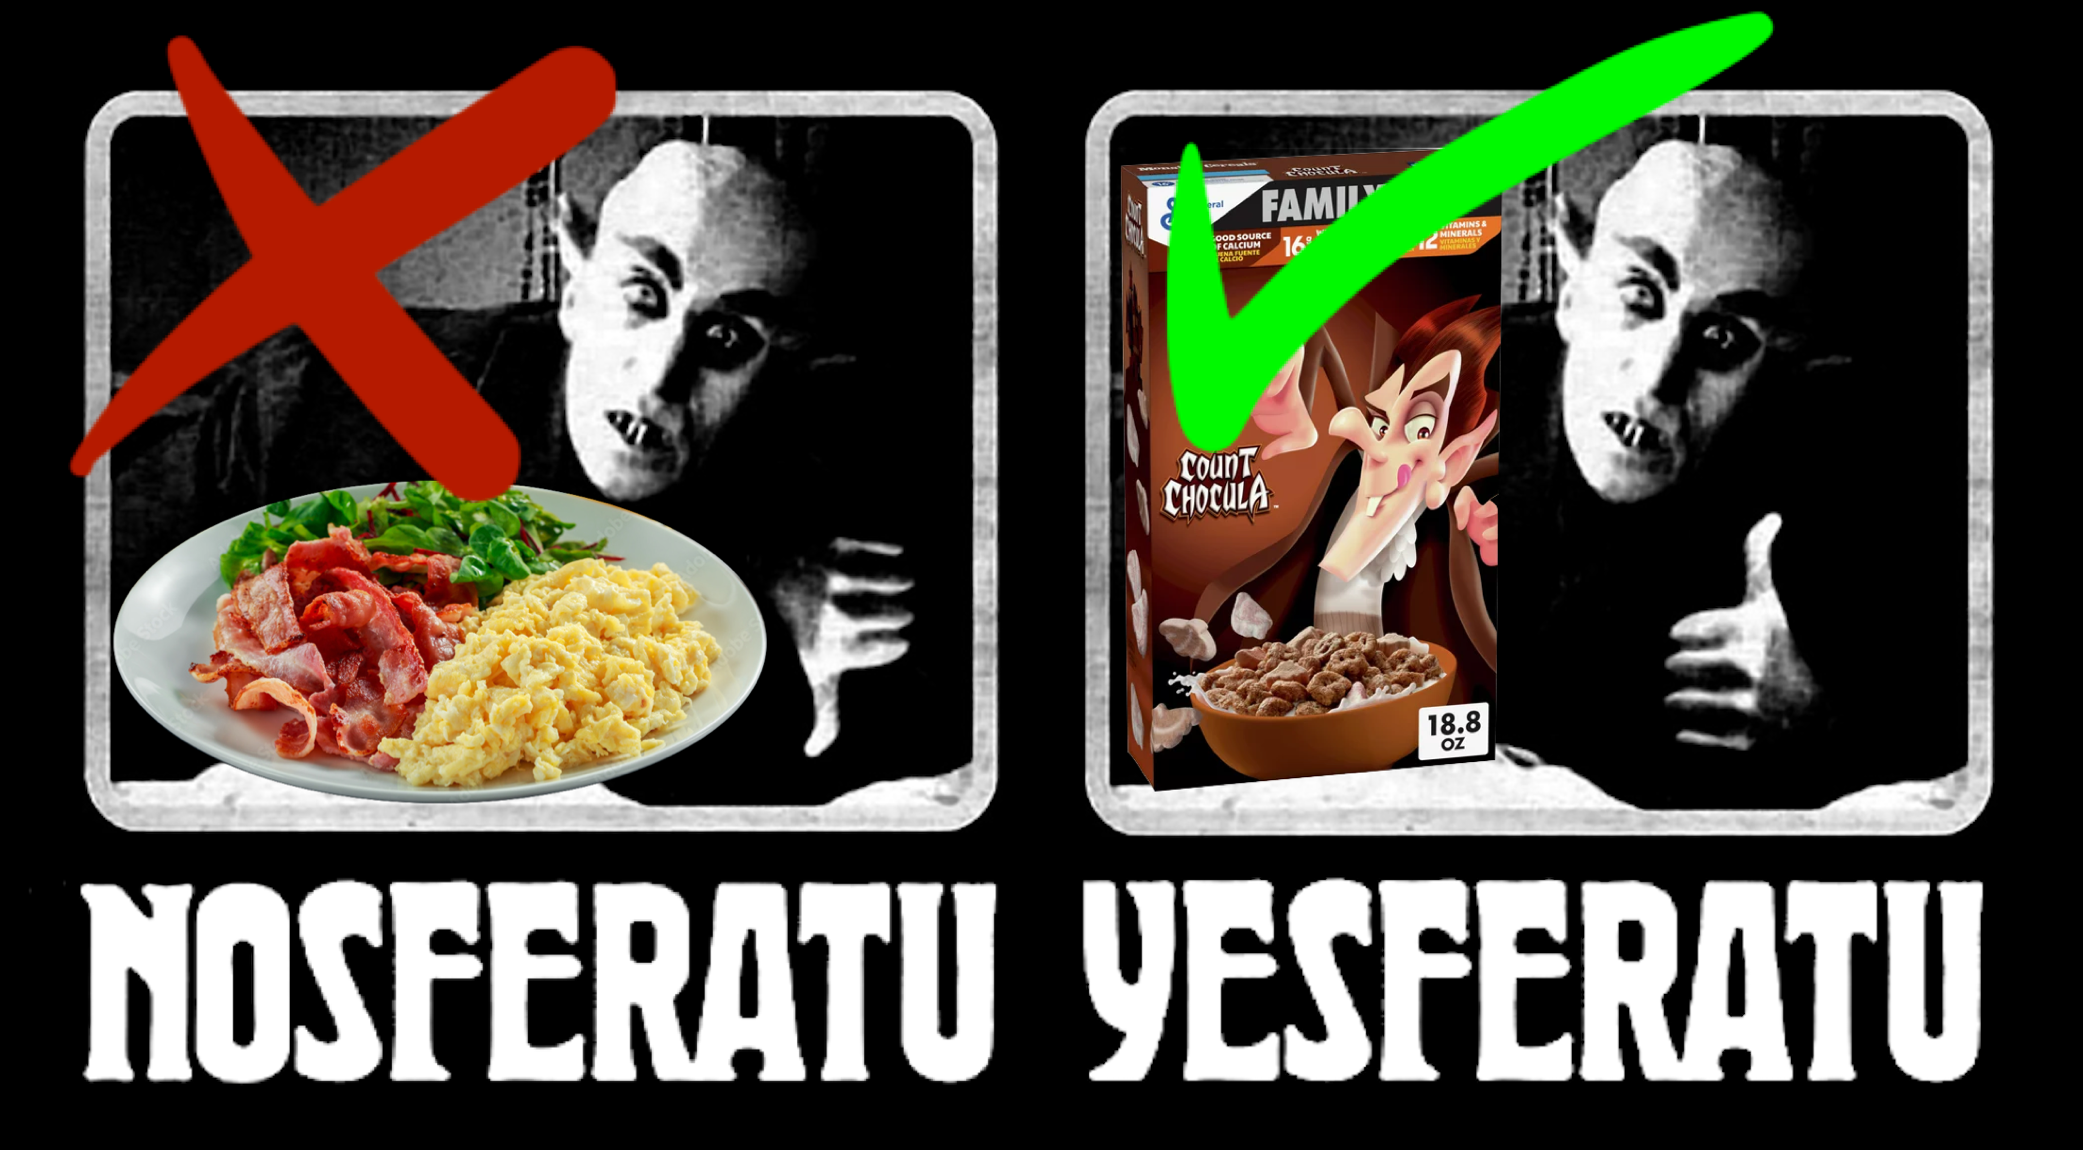 High Quality Nosferatu Yesferatu Count Chocula Meme Blank Meme Template